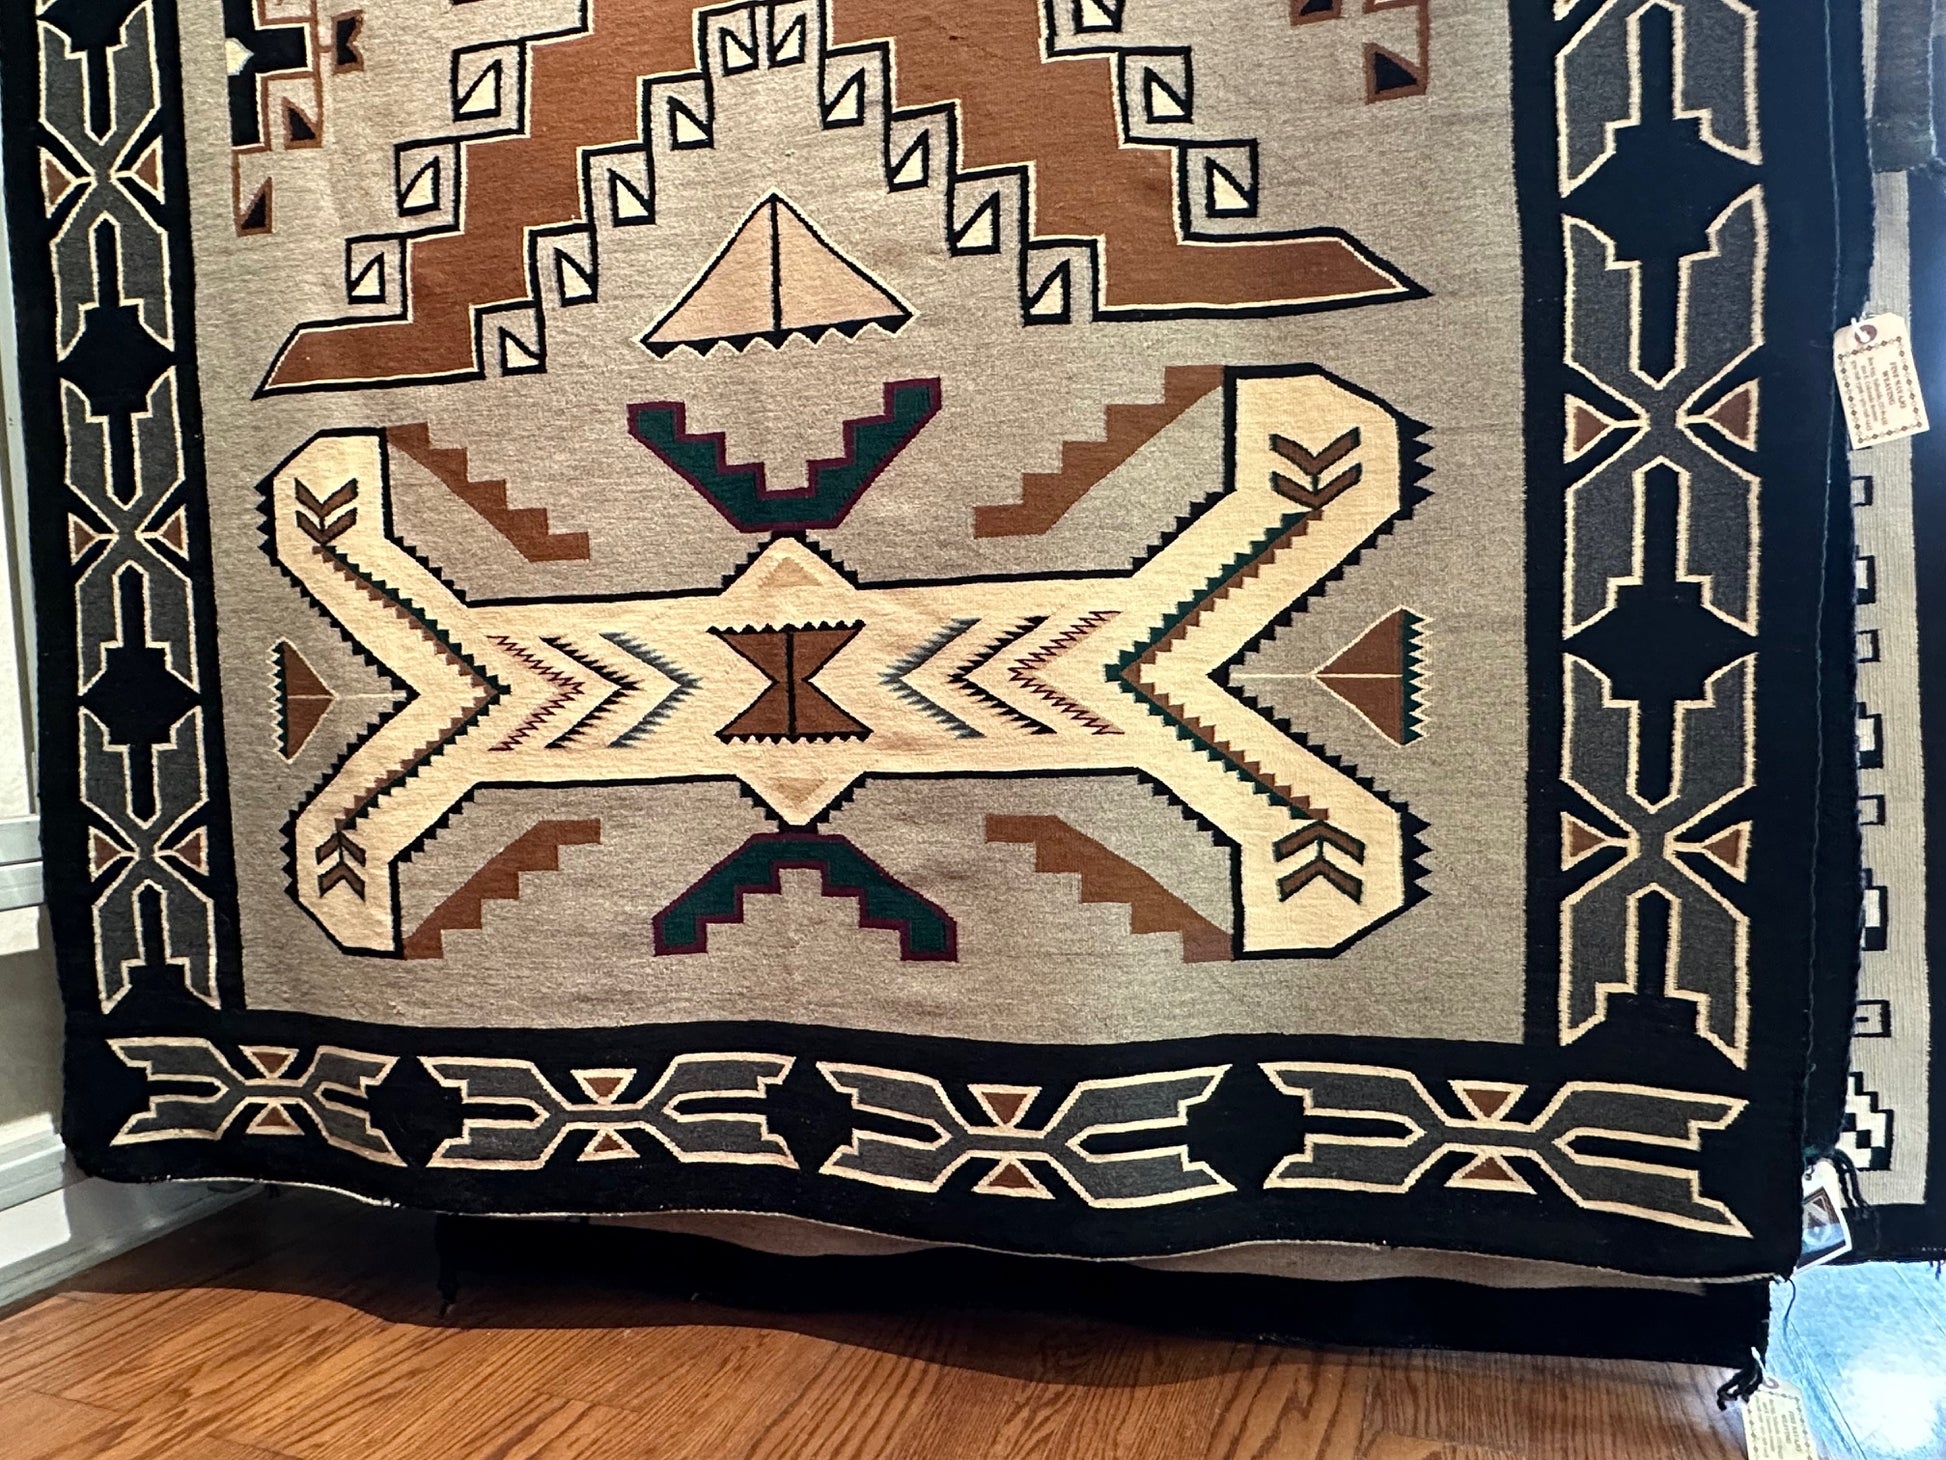 Vintage Teec Nos Pos Navajo Weaving for sale, navajo rug for sale, vintage navajo rugs for sale, telluride gallery